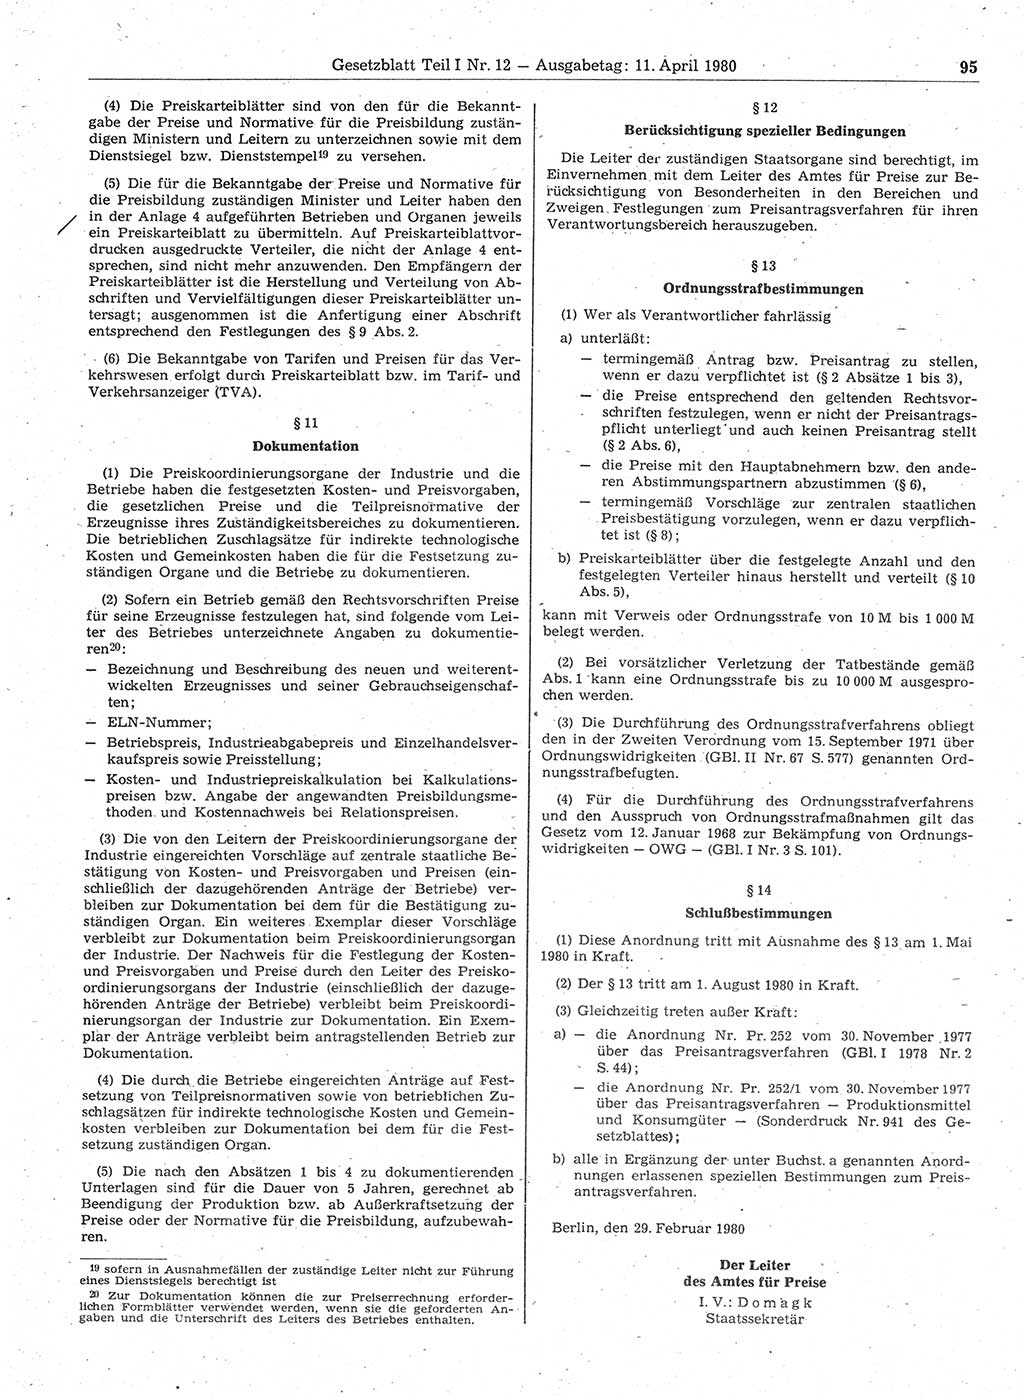 Gesetzblatt (GBl.) der Deutschen Demokratischen Republik (DDR) Teil Ⅰ 1980, Seite 95 (GBl. DDR Ⅰ 1980, S. 95)